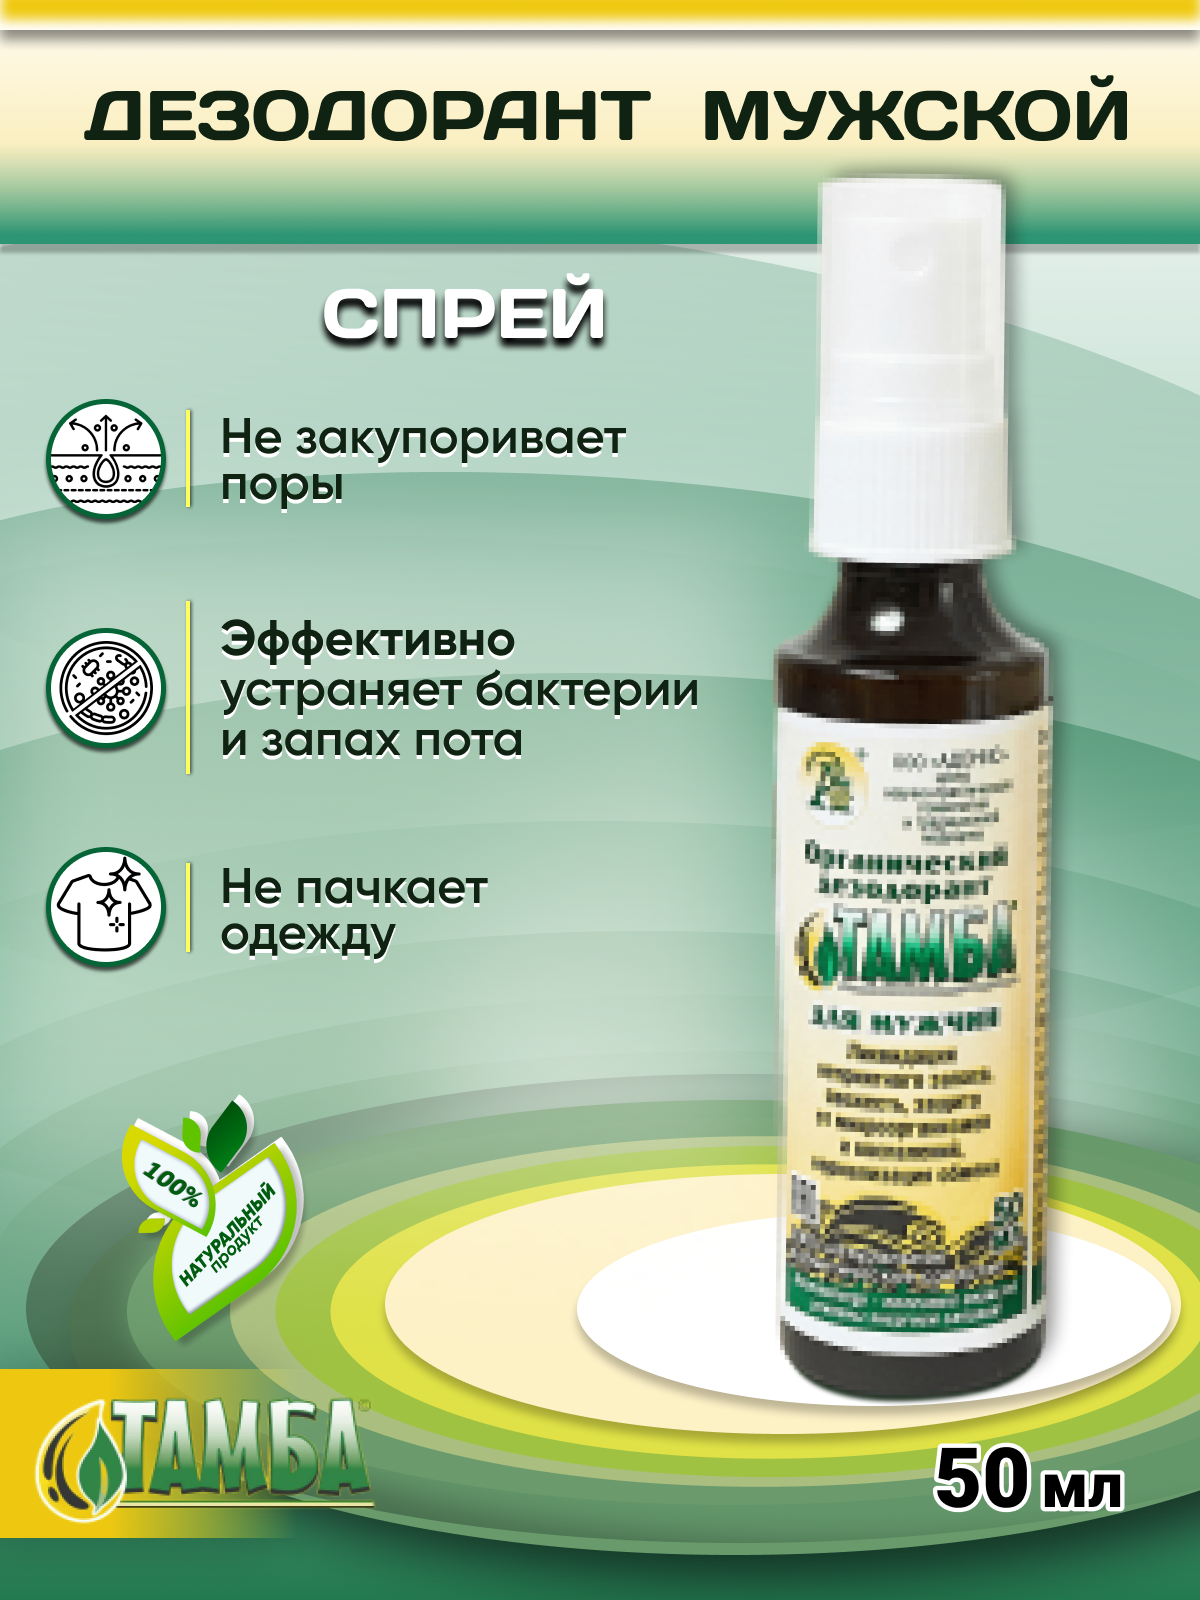 Дезодорант мужской антиперспирант Тамба 100% натуральная органическая косметика без спирта (Адонис), 50 мл.